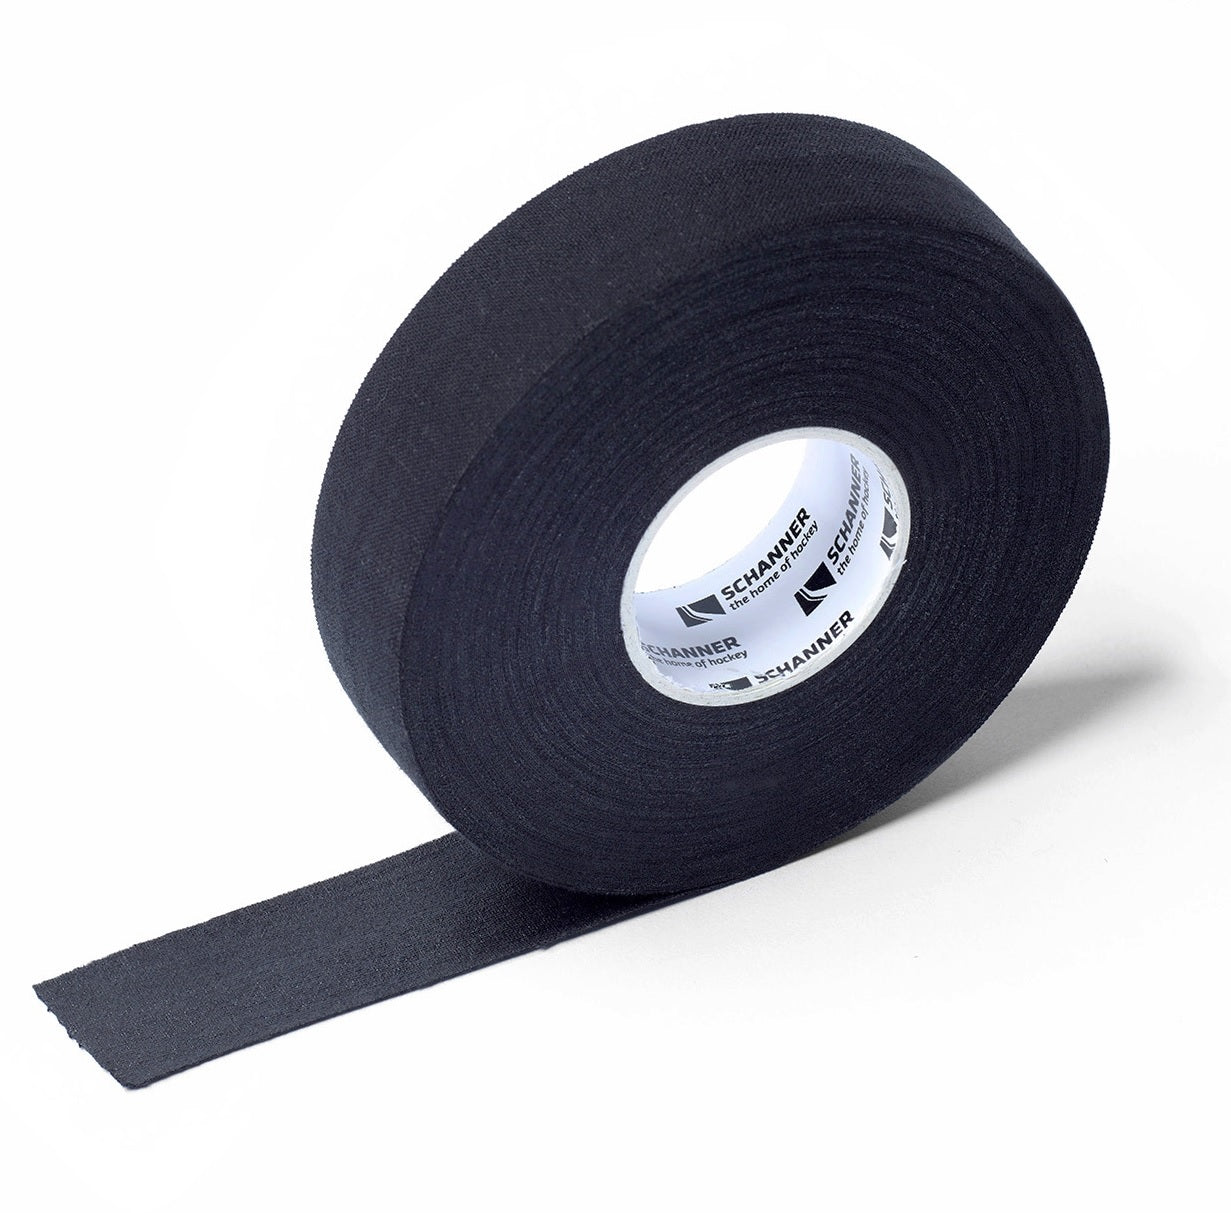 Eishockey Tape Schanner cloth Schlägertape 25mm x 25m schwarz